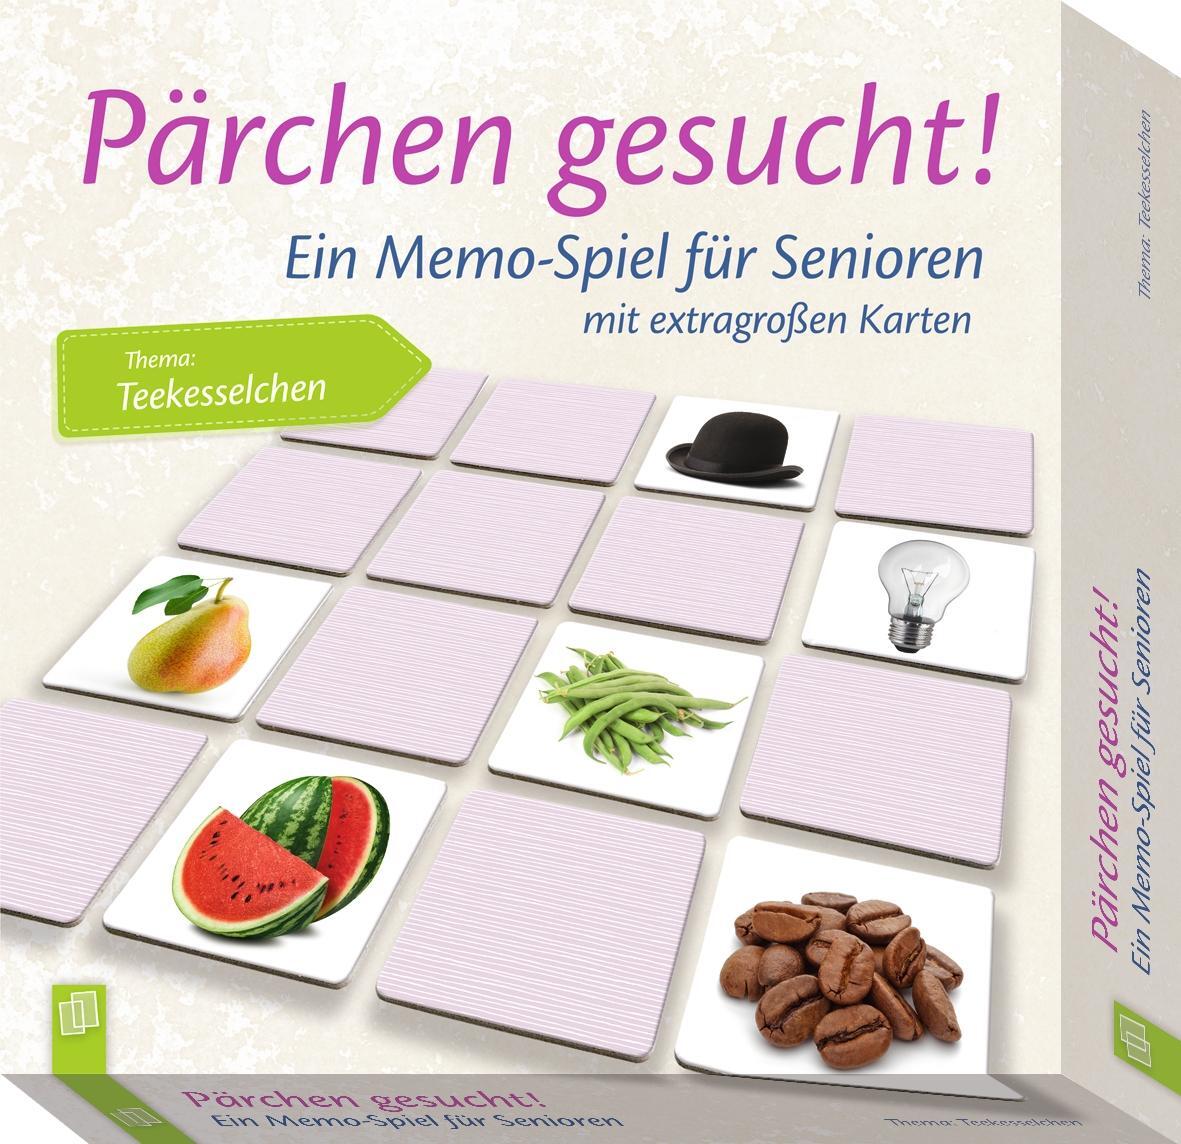 Bild: 9783834640468 | Pärchen gesucht - Thema "Teekesselchen" | Spiel | Pärchen gesucht!